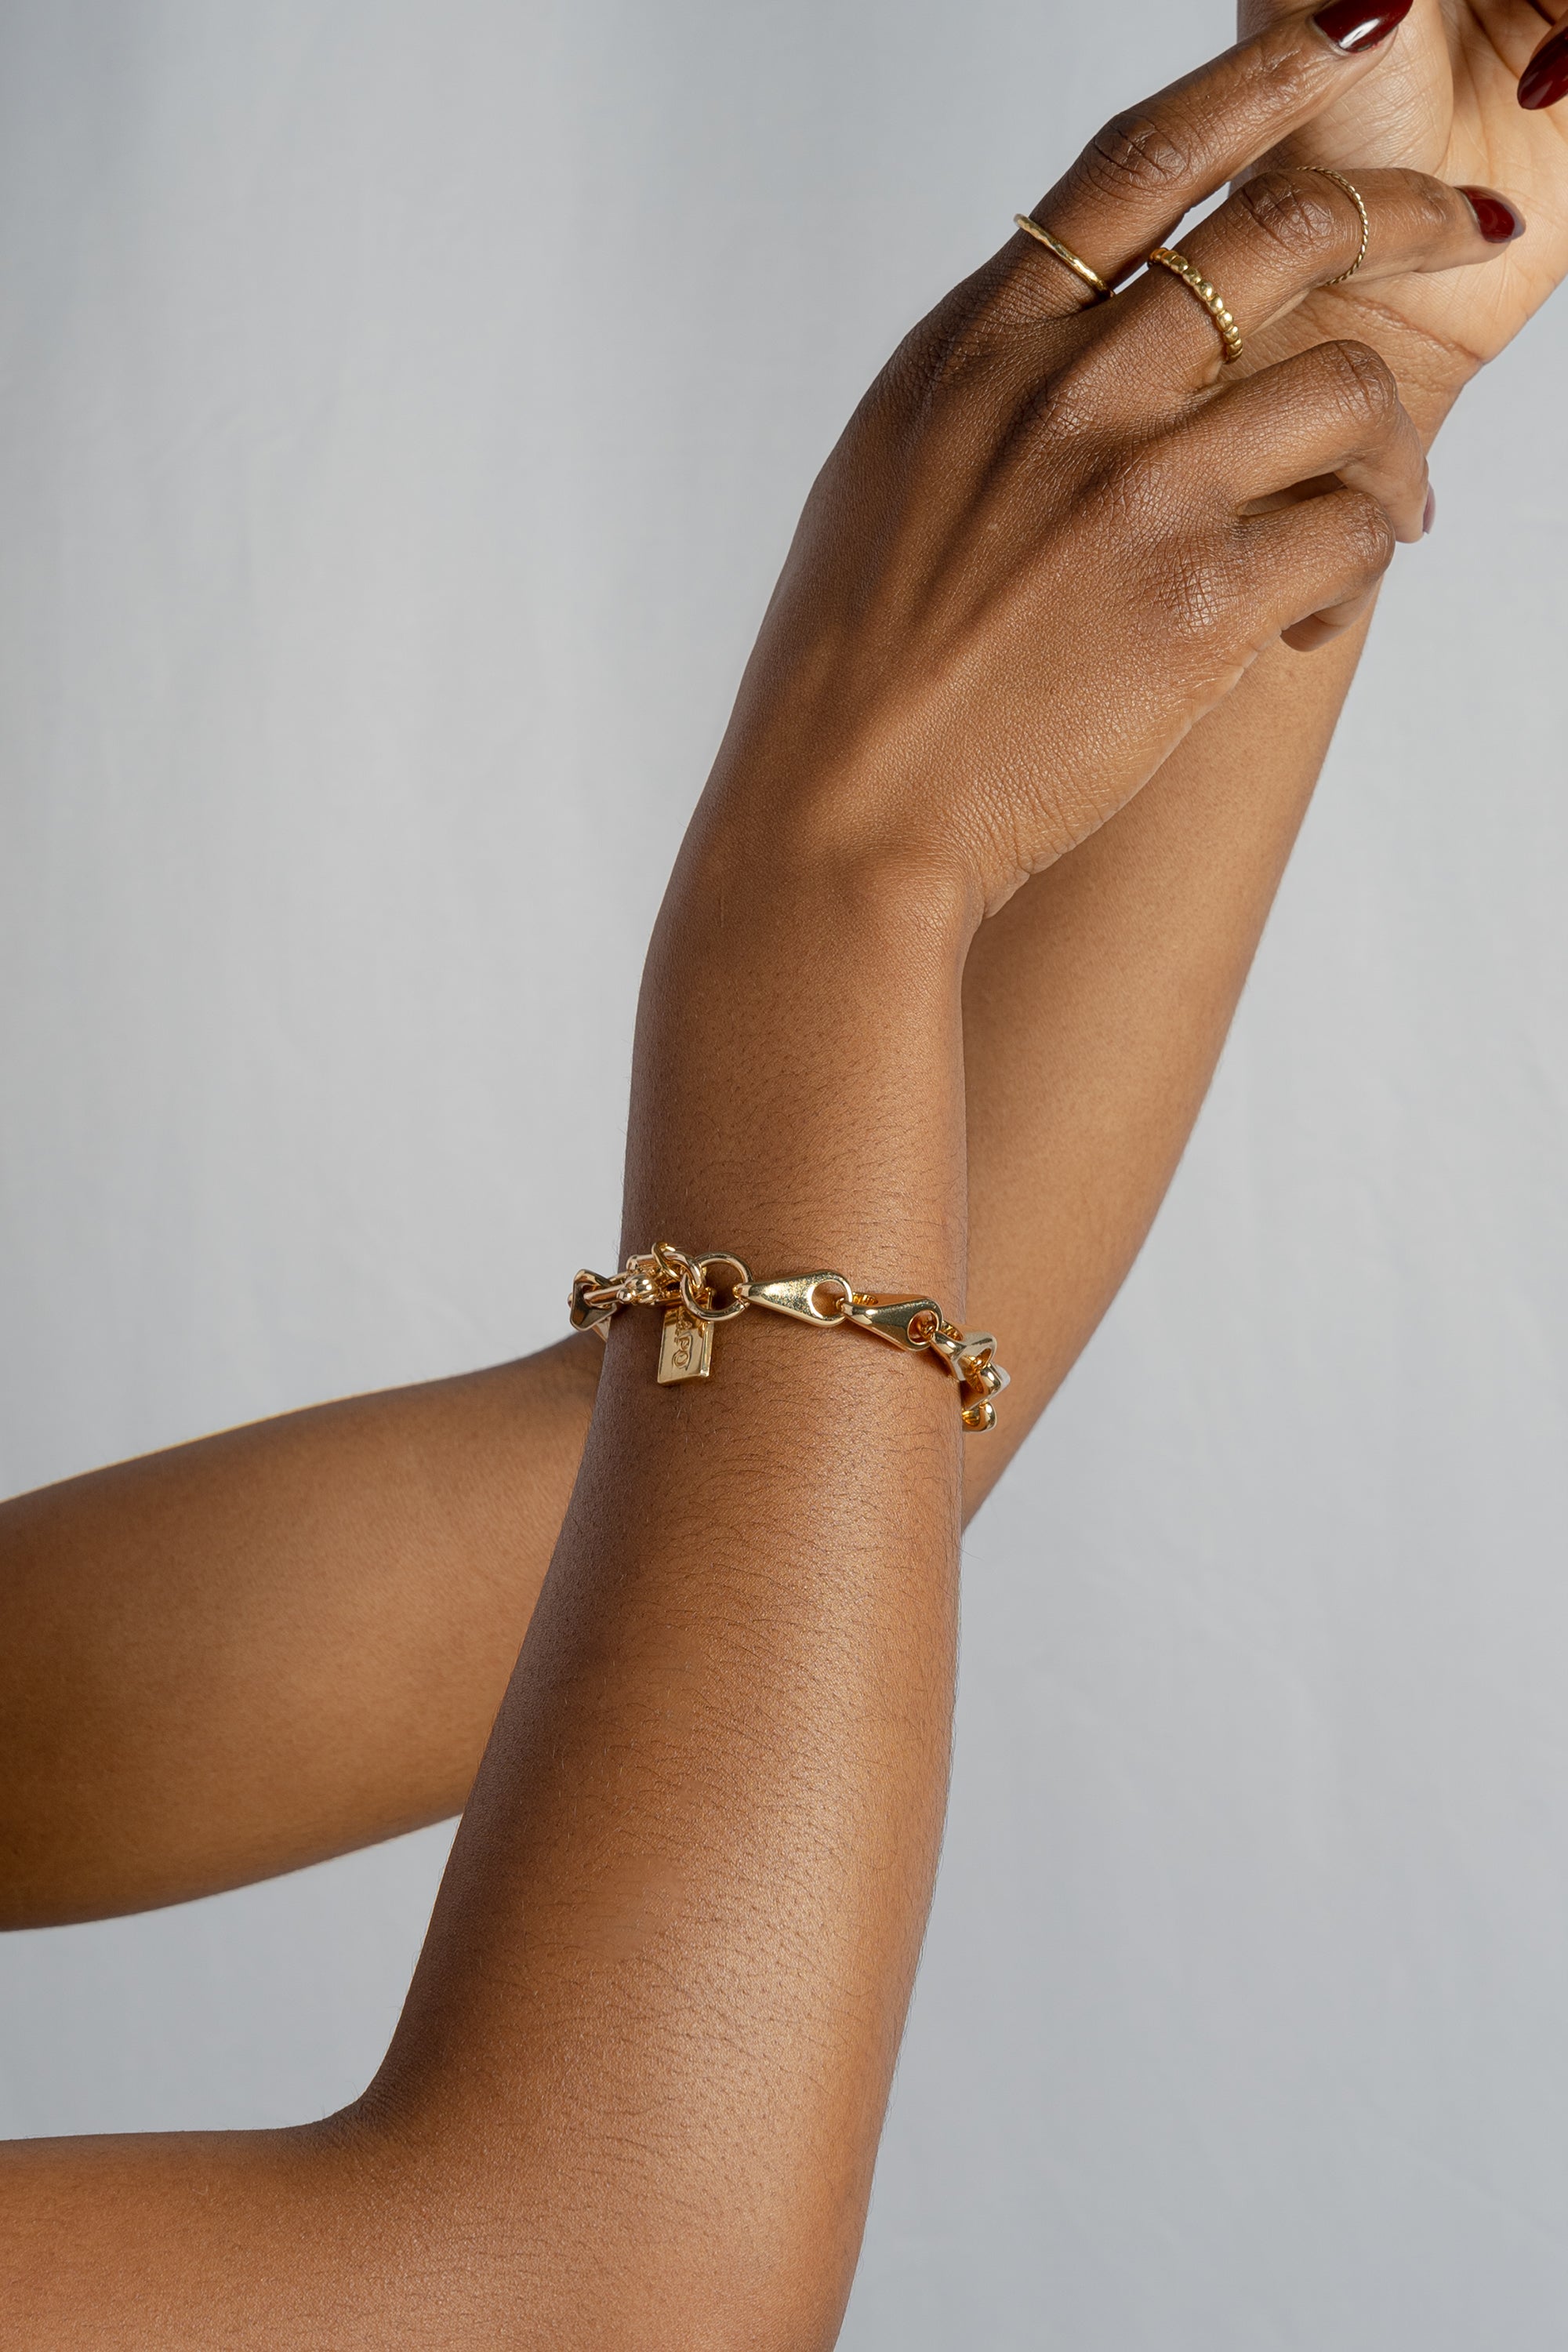 Zira Gold Bracelet